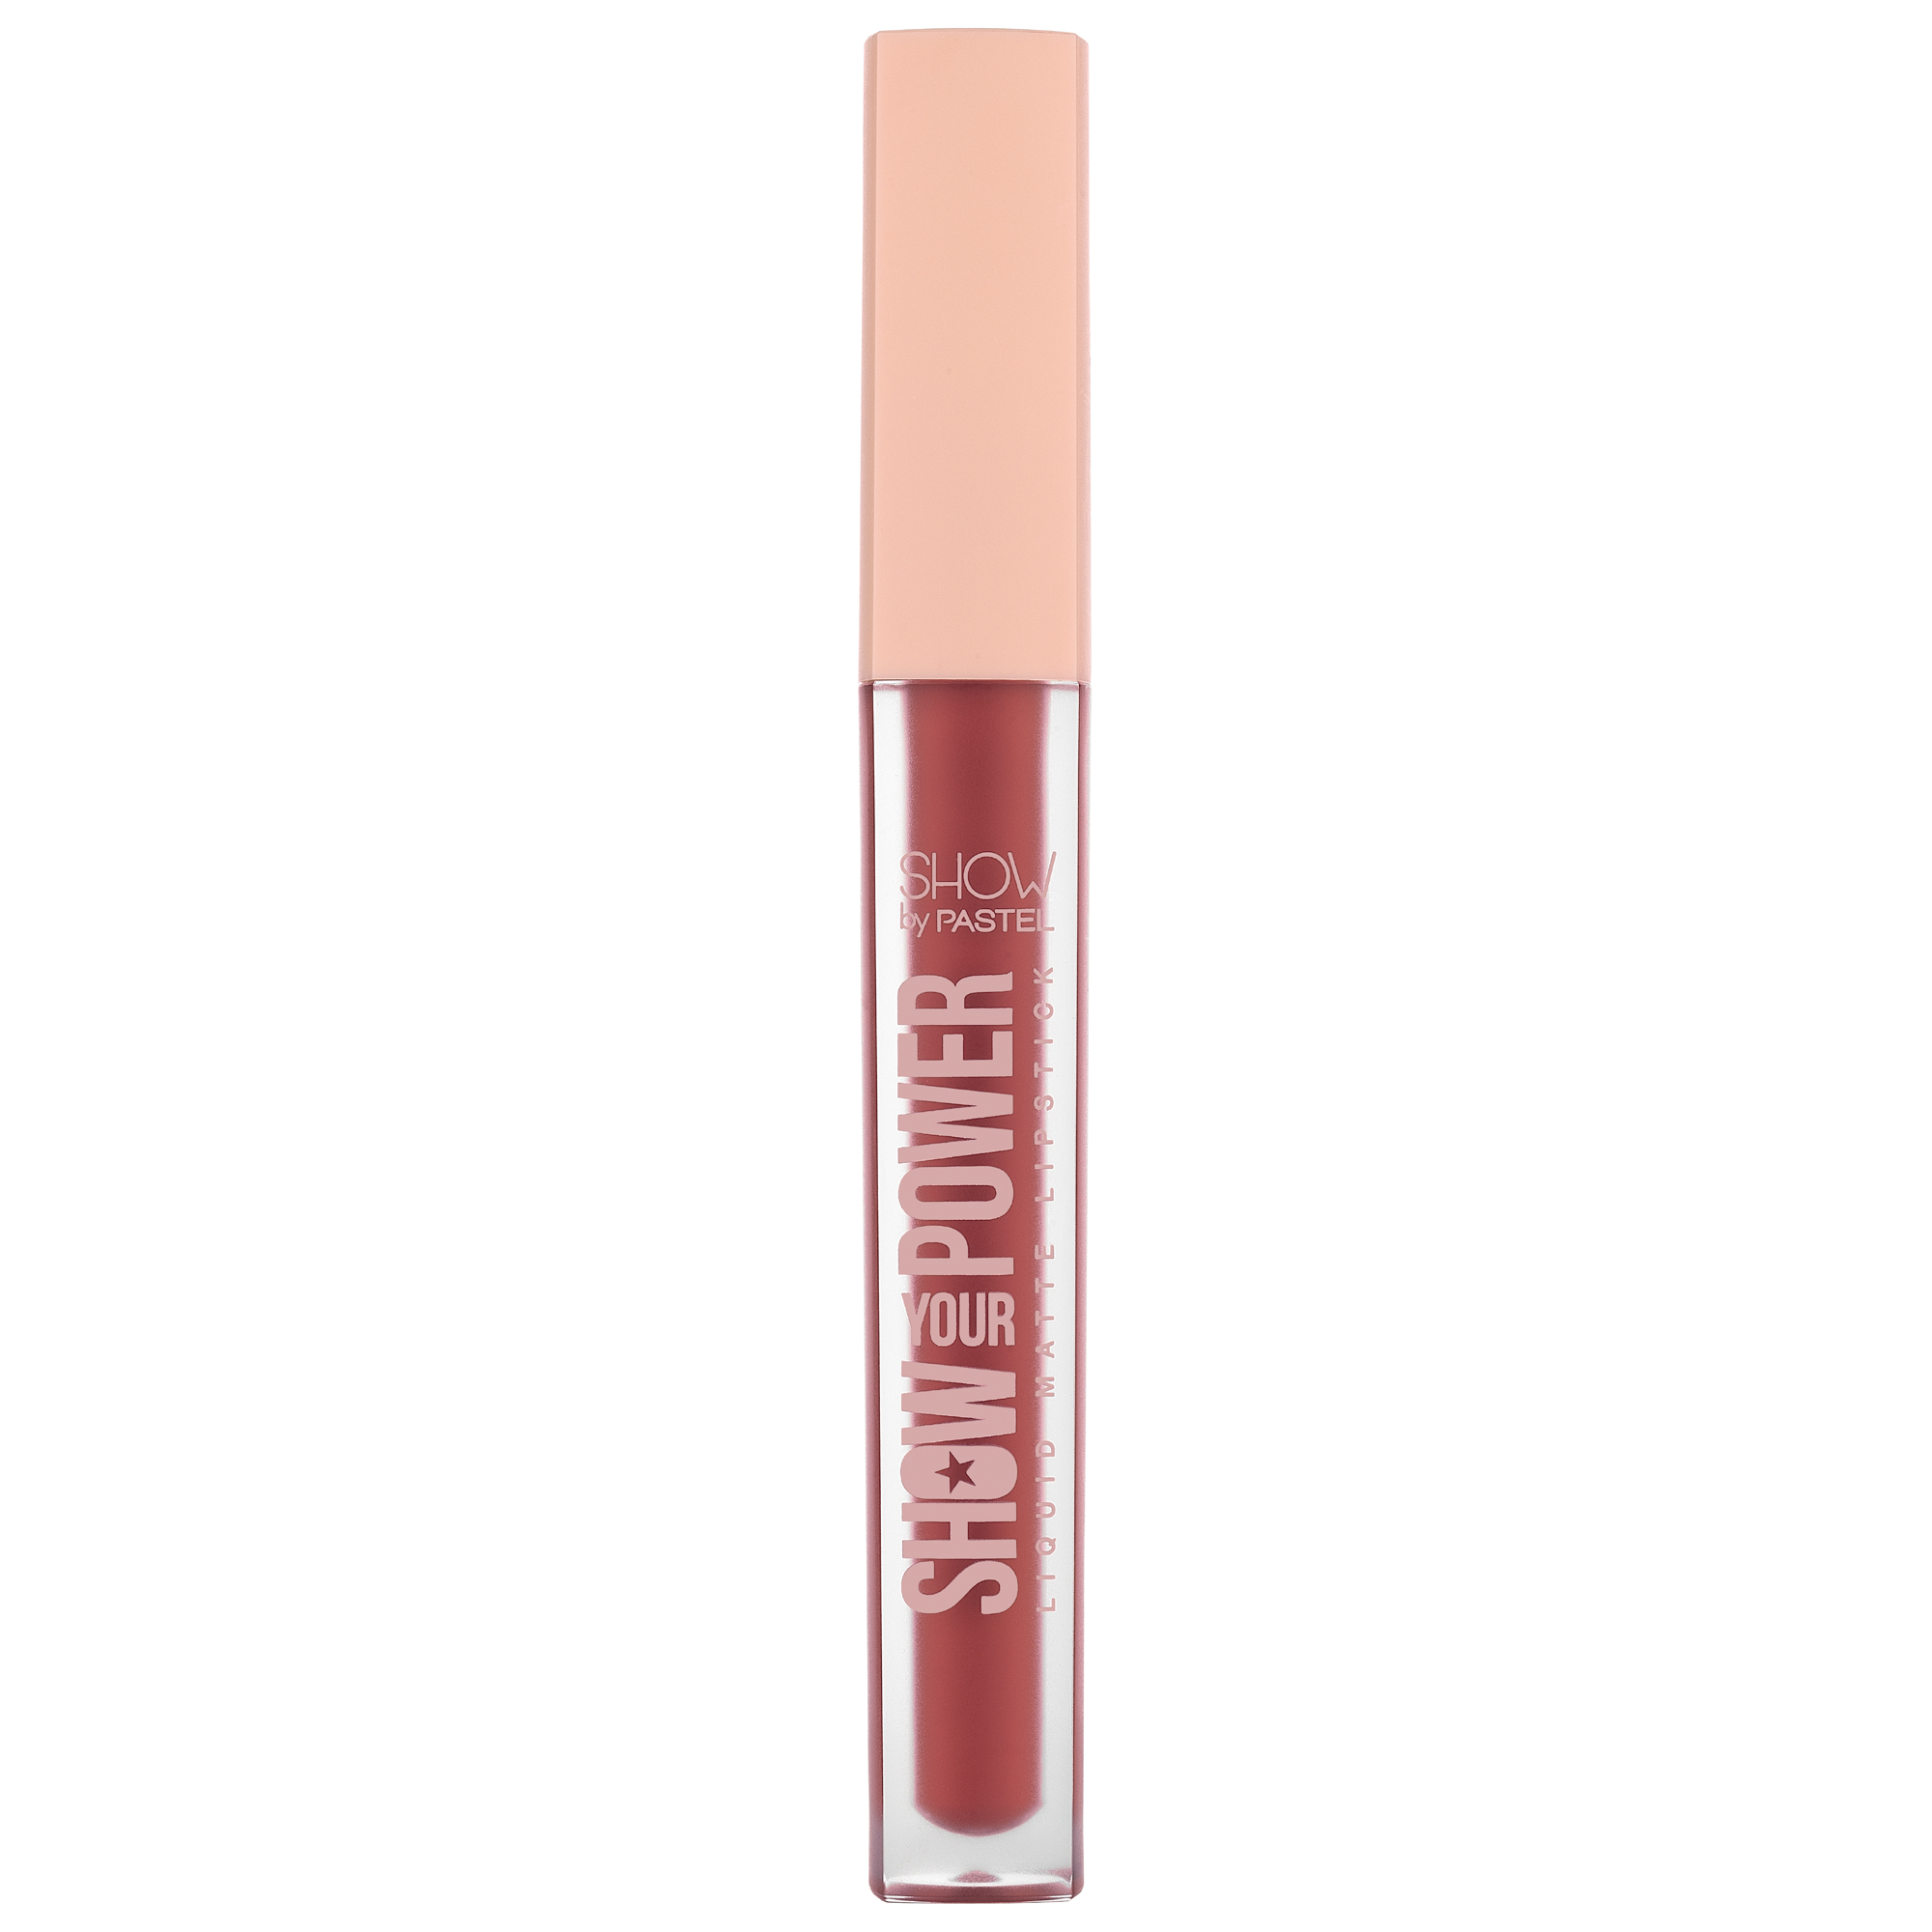 Pastel Show Your Power Liquid Matte Lipstick 604